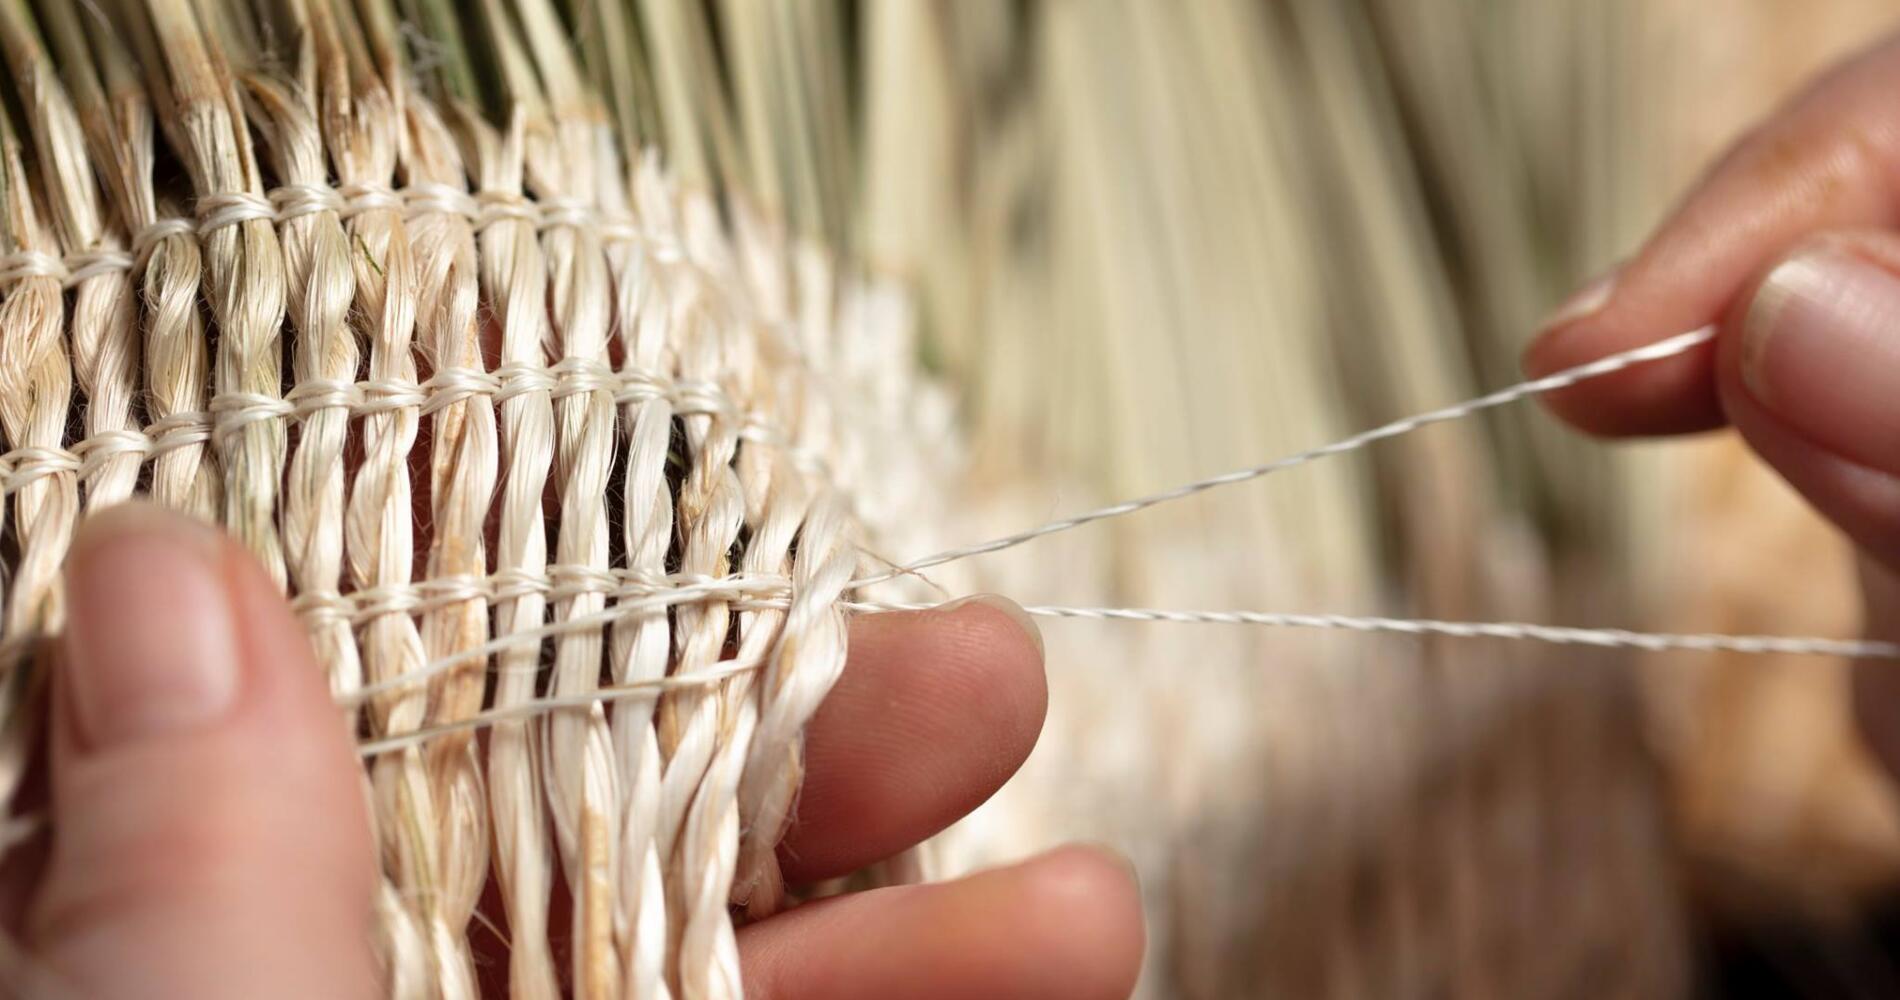 Raranga: Māori weaving